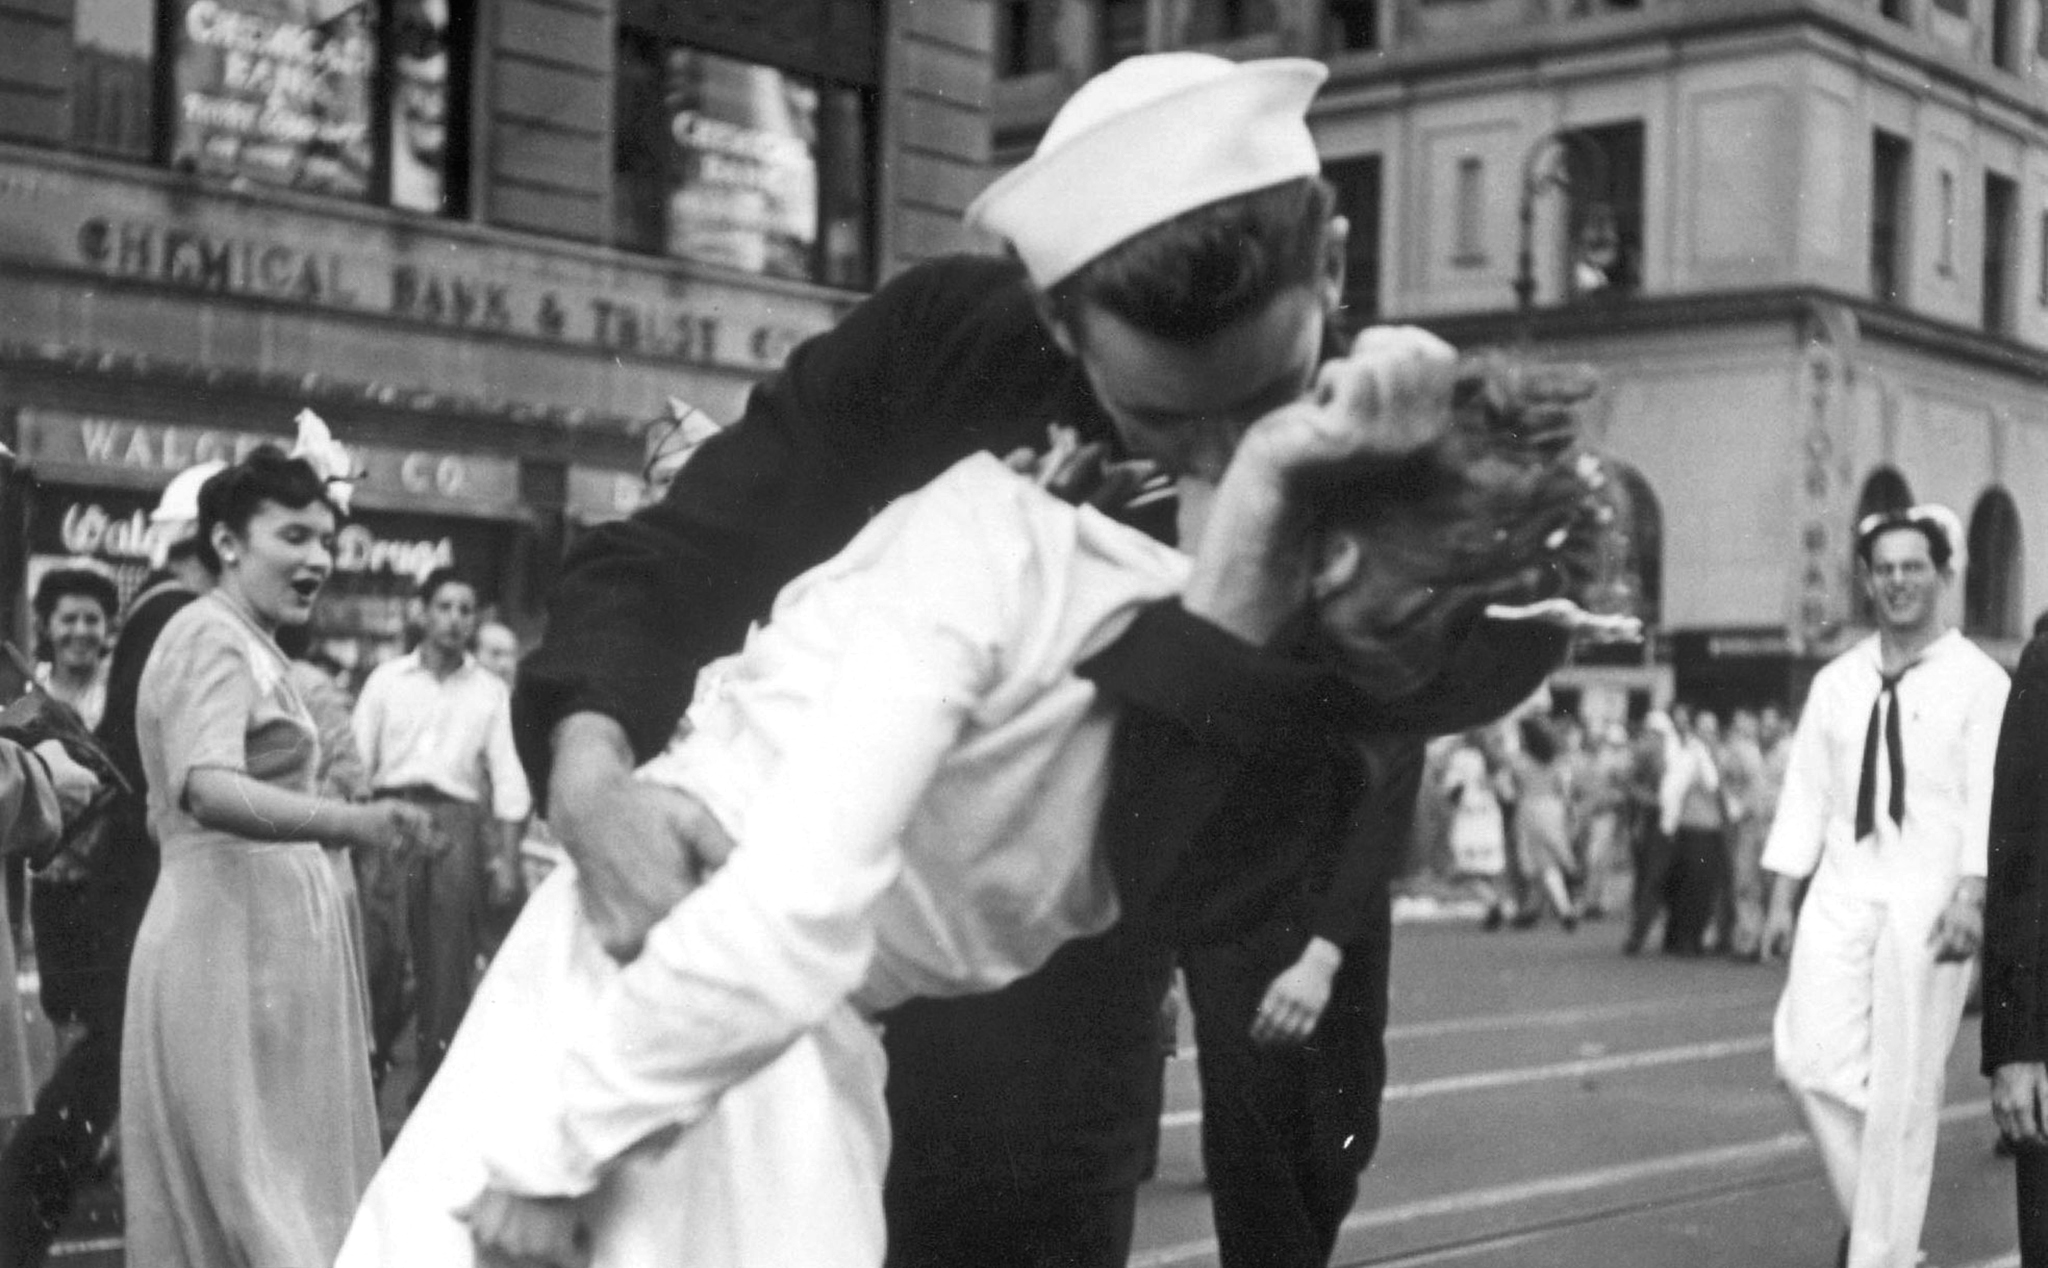 Chàng thủy thủ trong bức ảnh gây tranh cãi nhất thế kỷ 20 qua đời ở tuổi 95